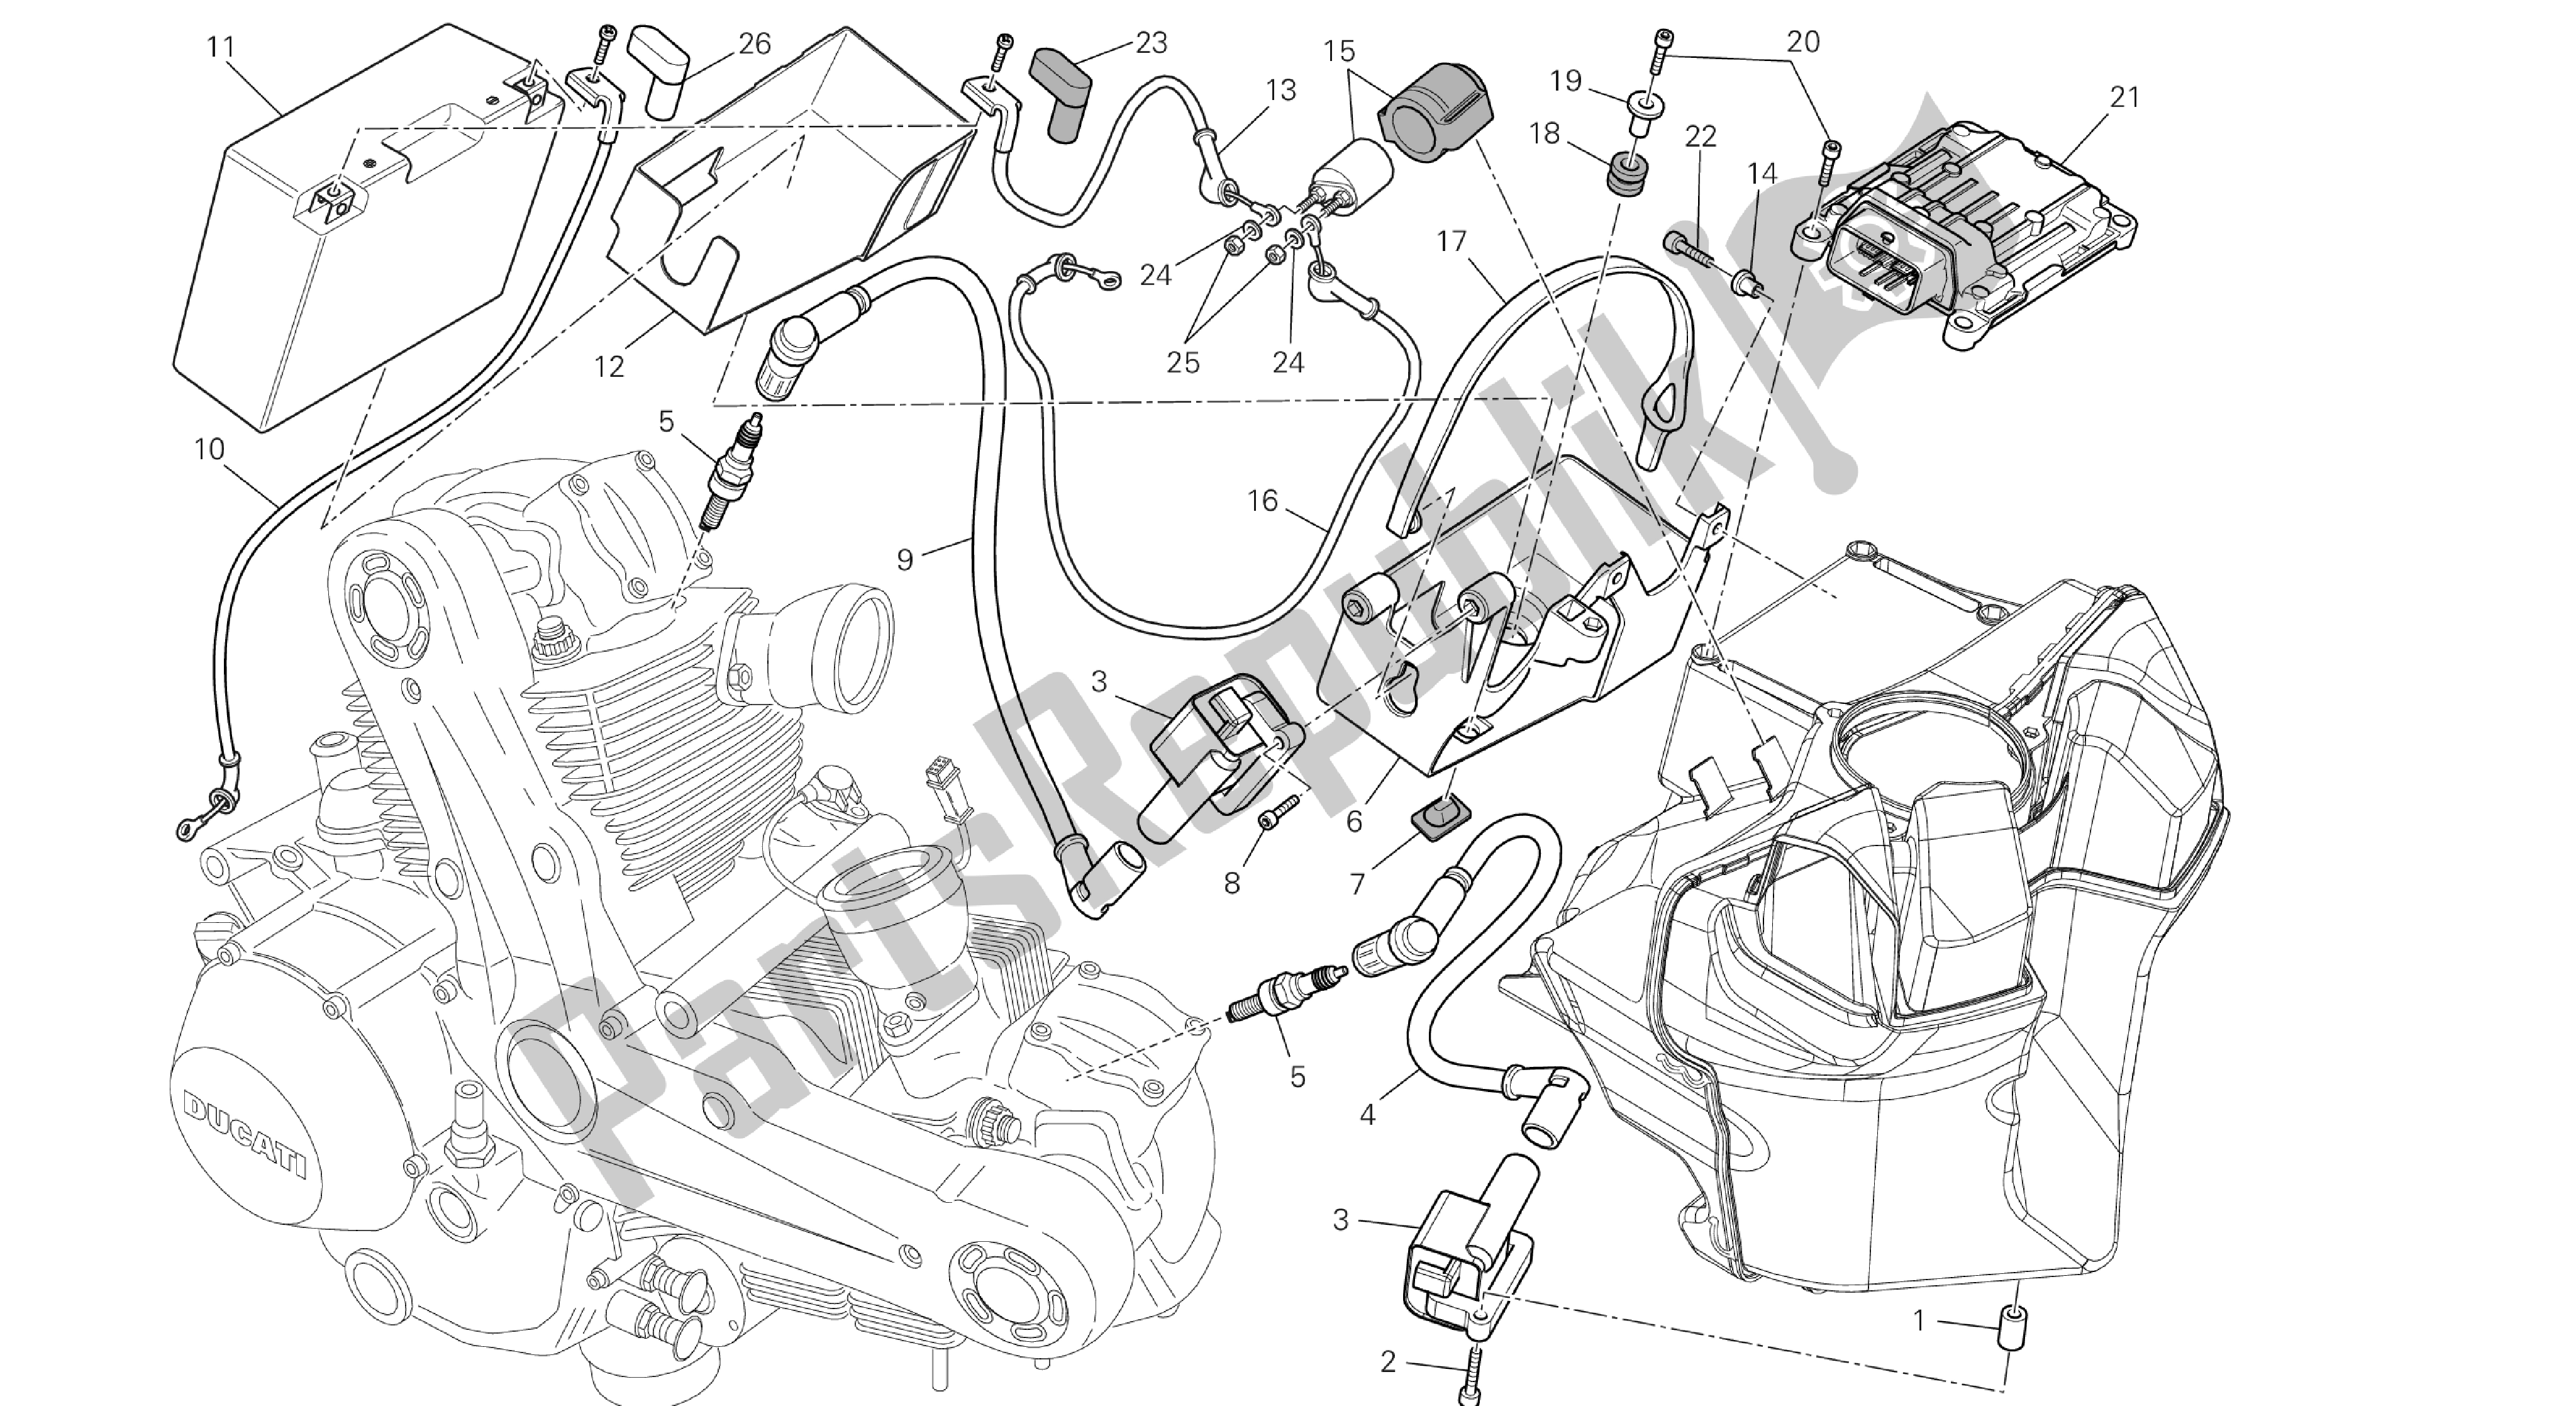 Todas las partes para Dibujo 019 - Batería [mod: M1100dsl; Xst: Aus, Chn, Eur, Jap] Grupo Eléctrico de Ducati Monster 1100 2013